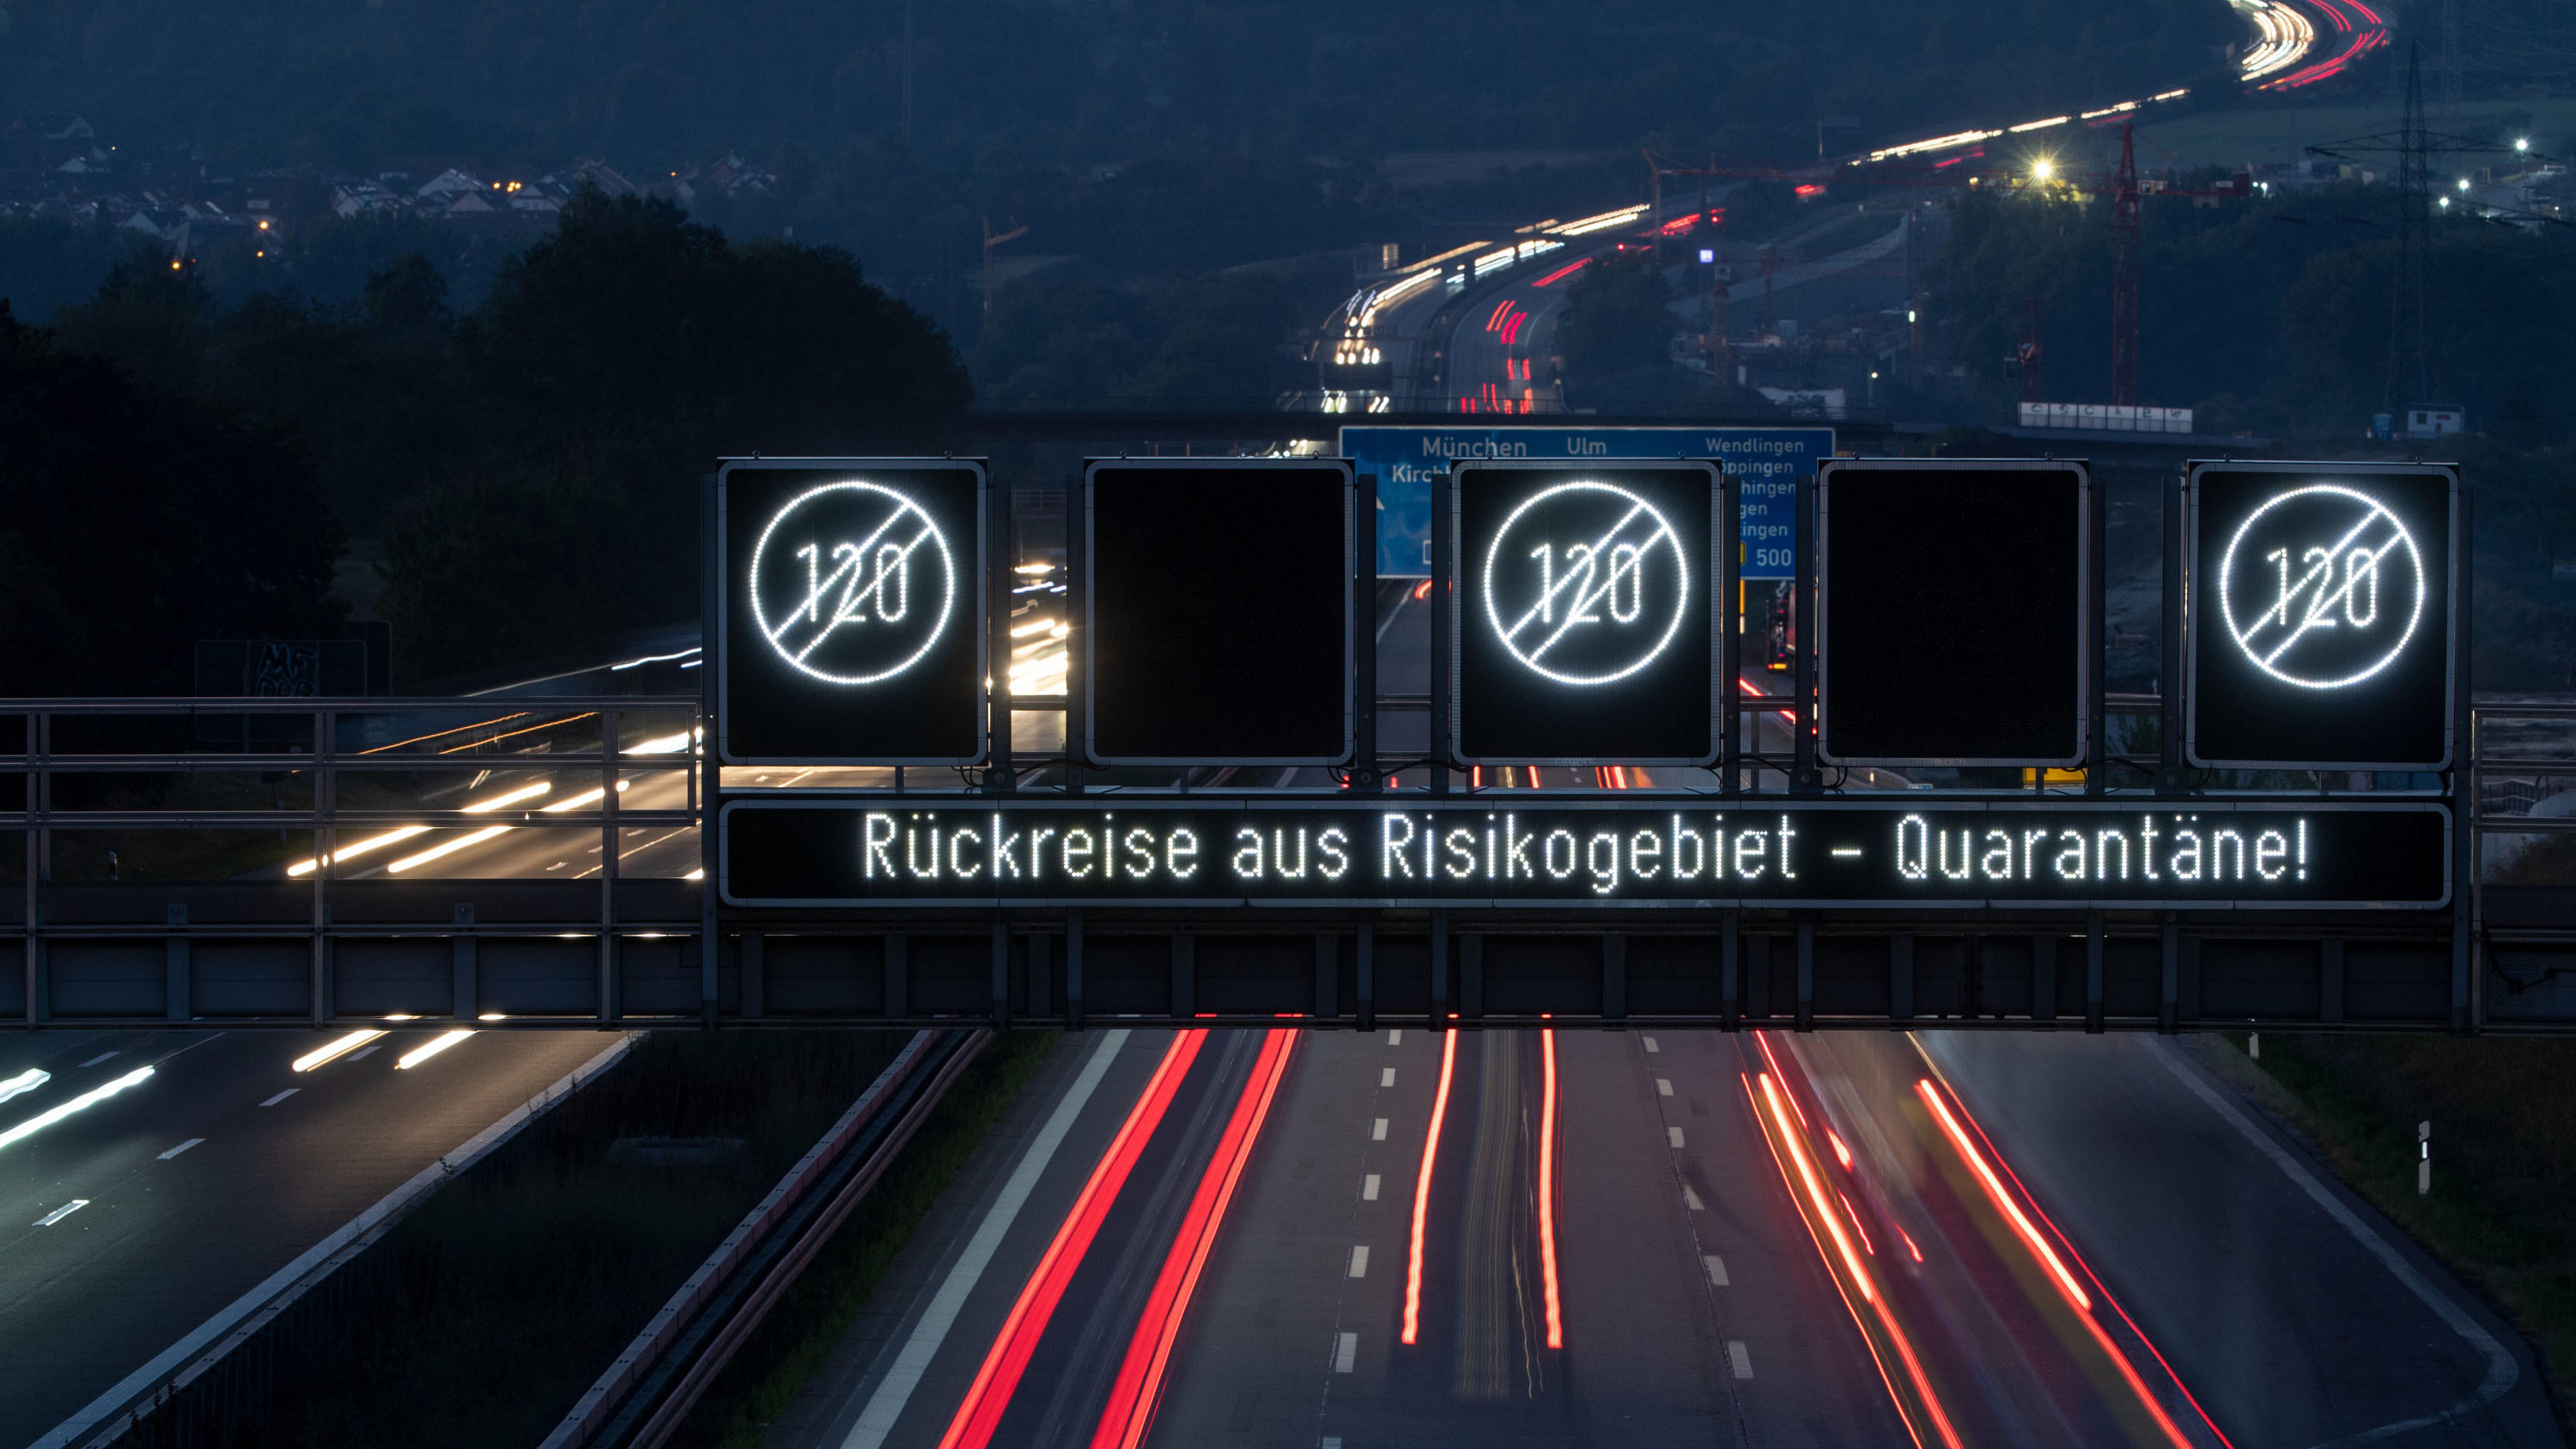 21.08.2020, Baden-Württemberg, Köngen: Eine Anzeige auf der A8 hat die Aufschrift "Rückreise aus Risikogebiet - Quarantäne". Zum Ende der Urlaubssaison in zahlreichen Bundesländern nehmen seit Tagen die Corona-Fälle zu. Weil auch in den Urlaubsländer